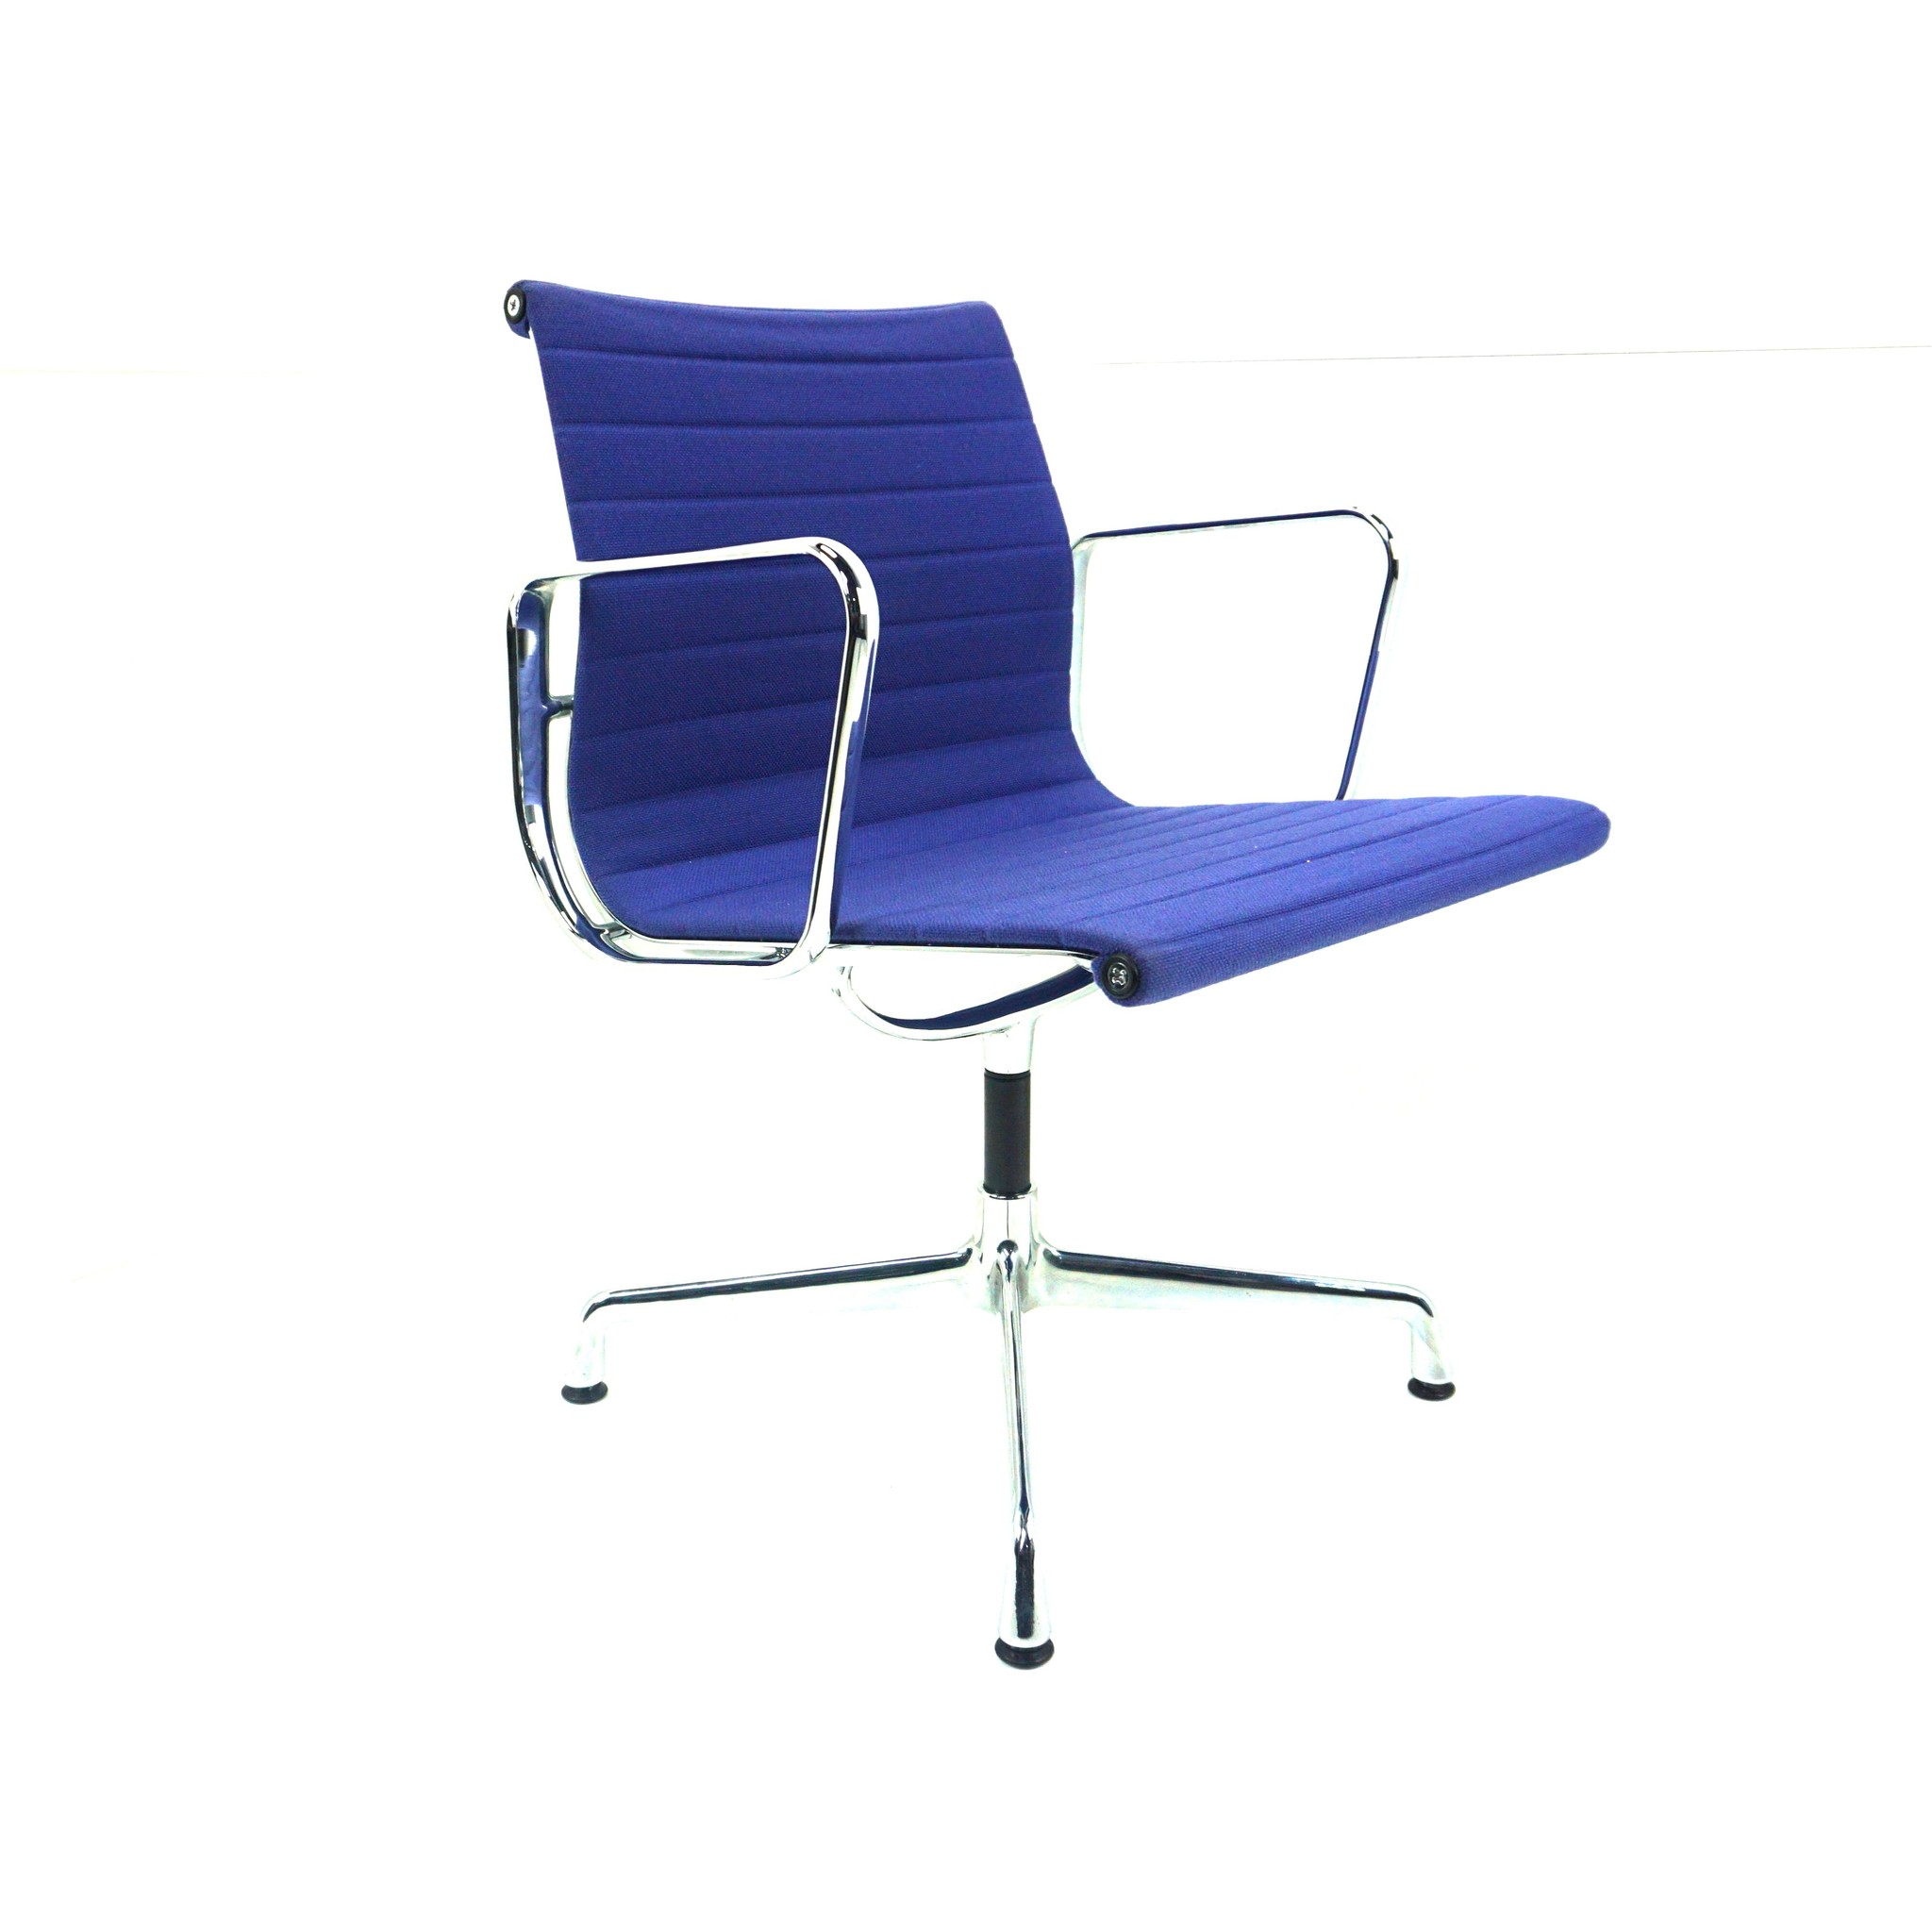 Vitra Bürodrehstuhl - Sitzpolster blau mit Netz-Rückenlehne